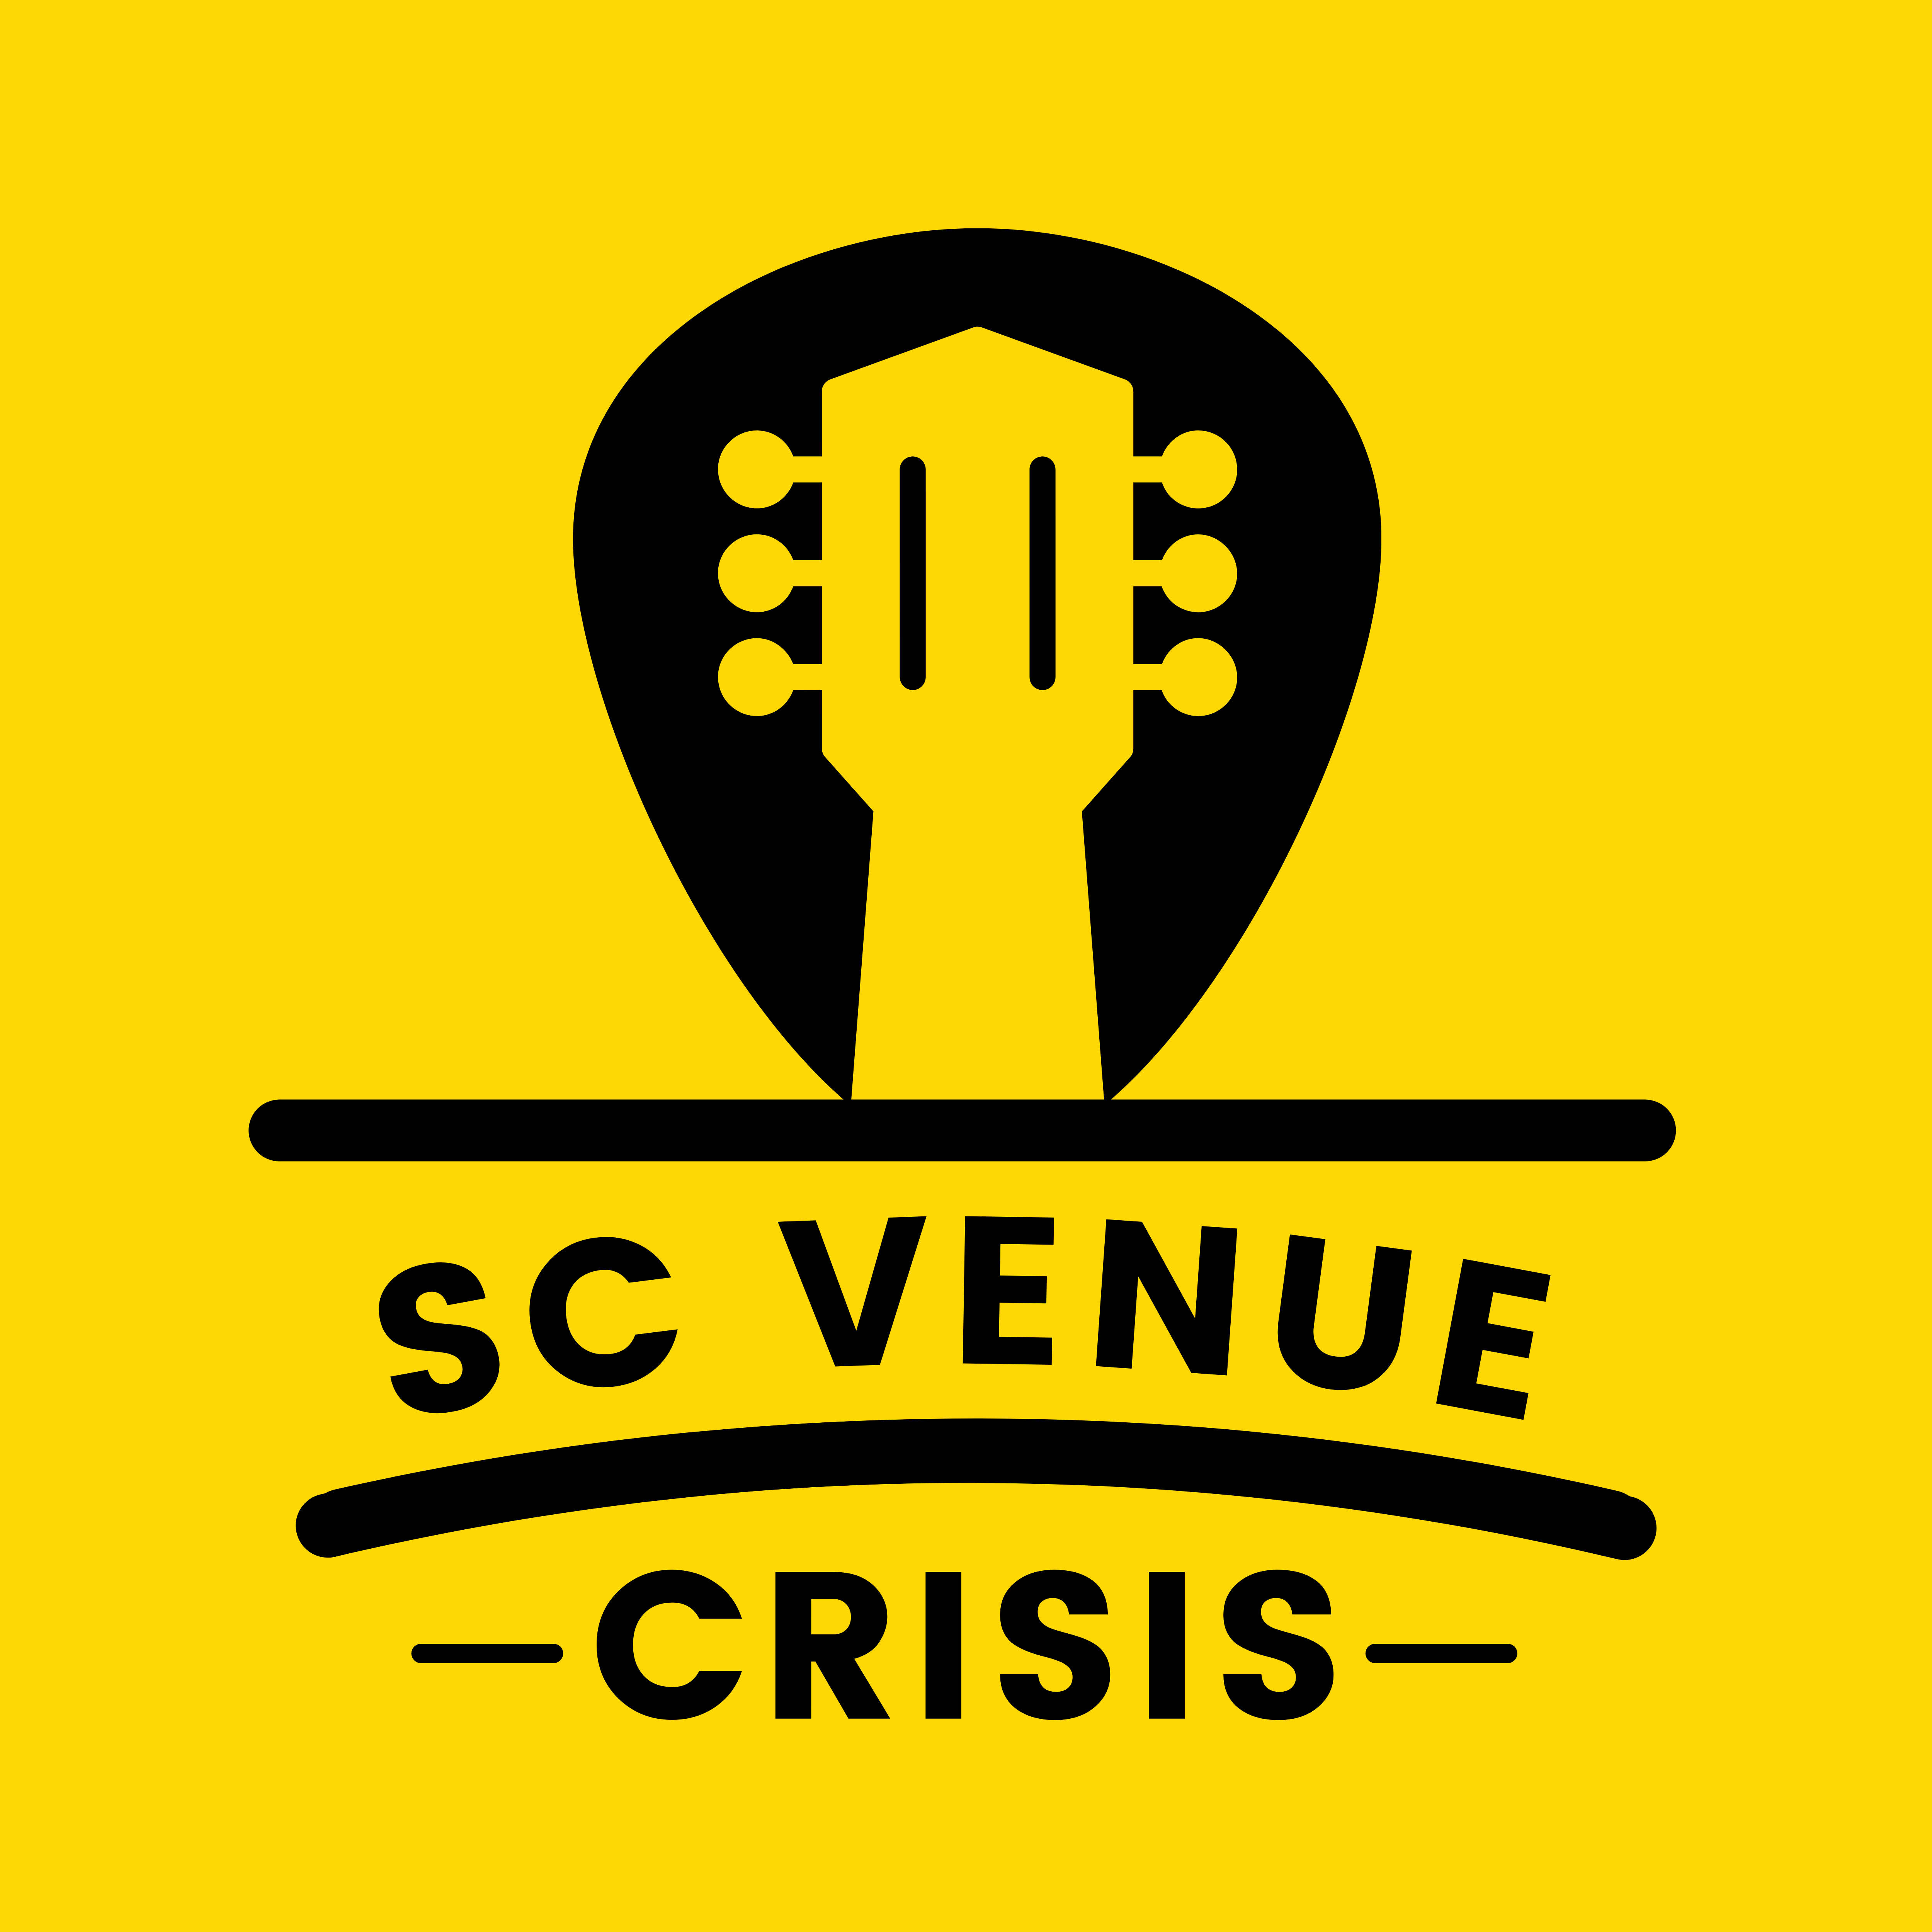 SC Venue Crisis